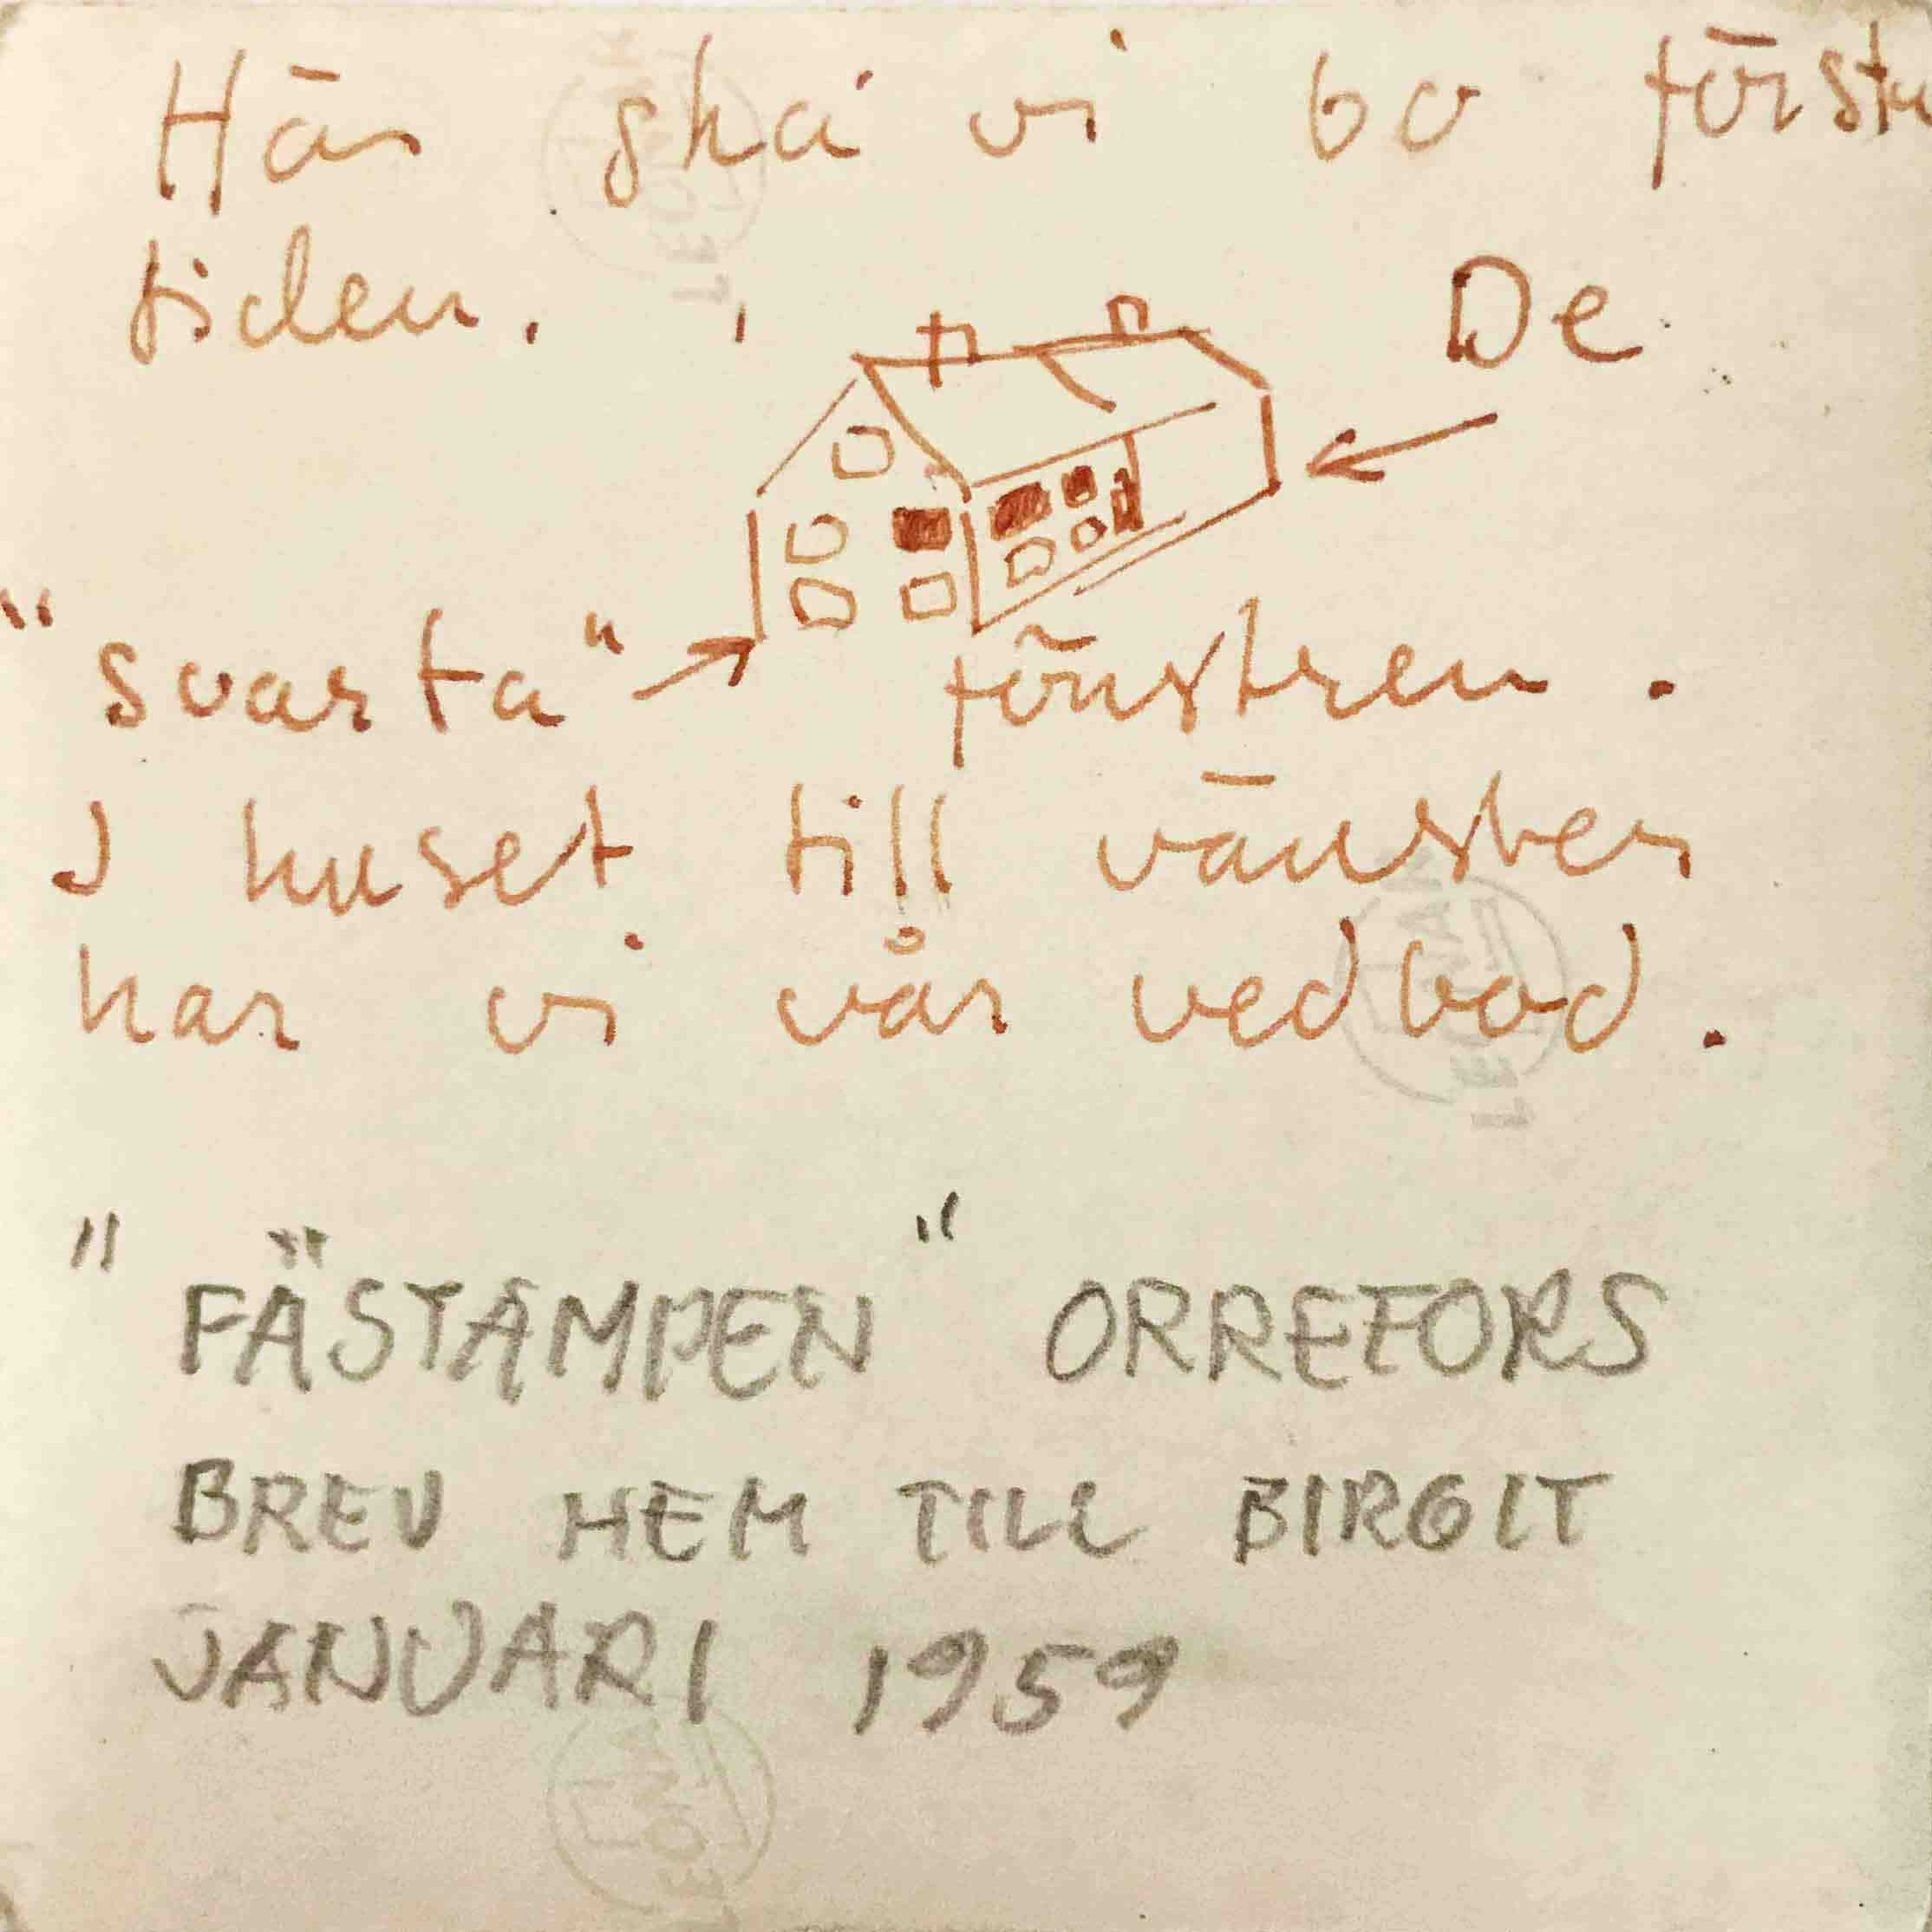 Baksida av kortet, som skickats till Birgitta inför flytten till Orrefors.